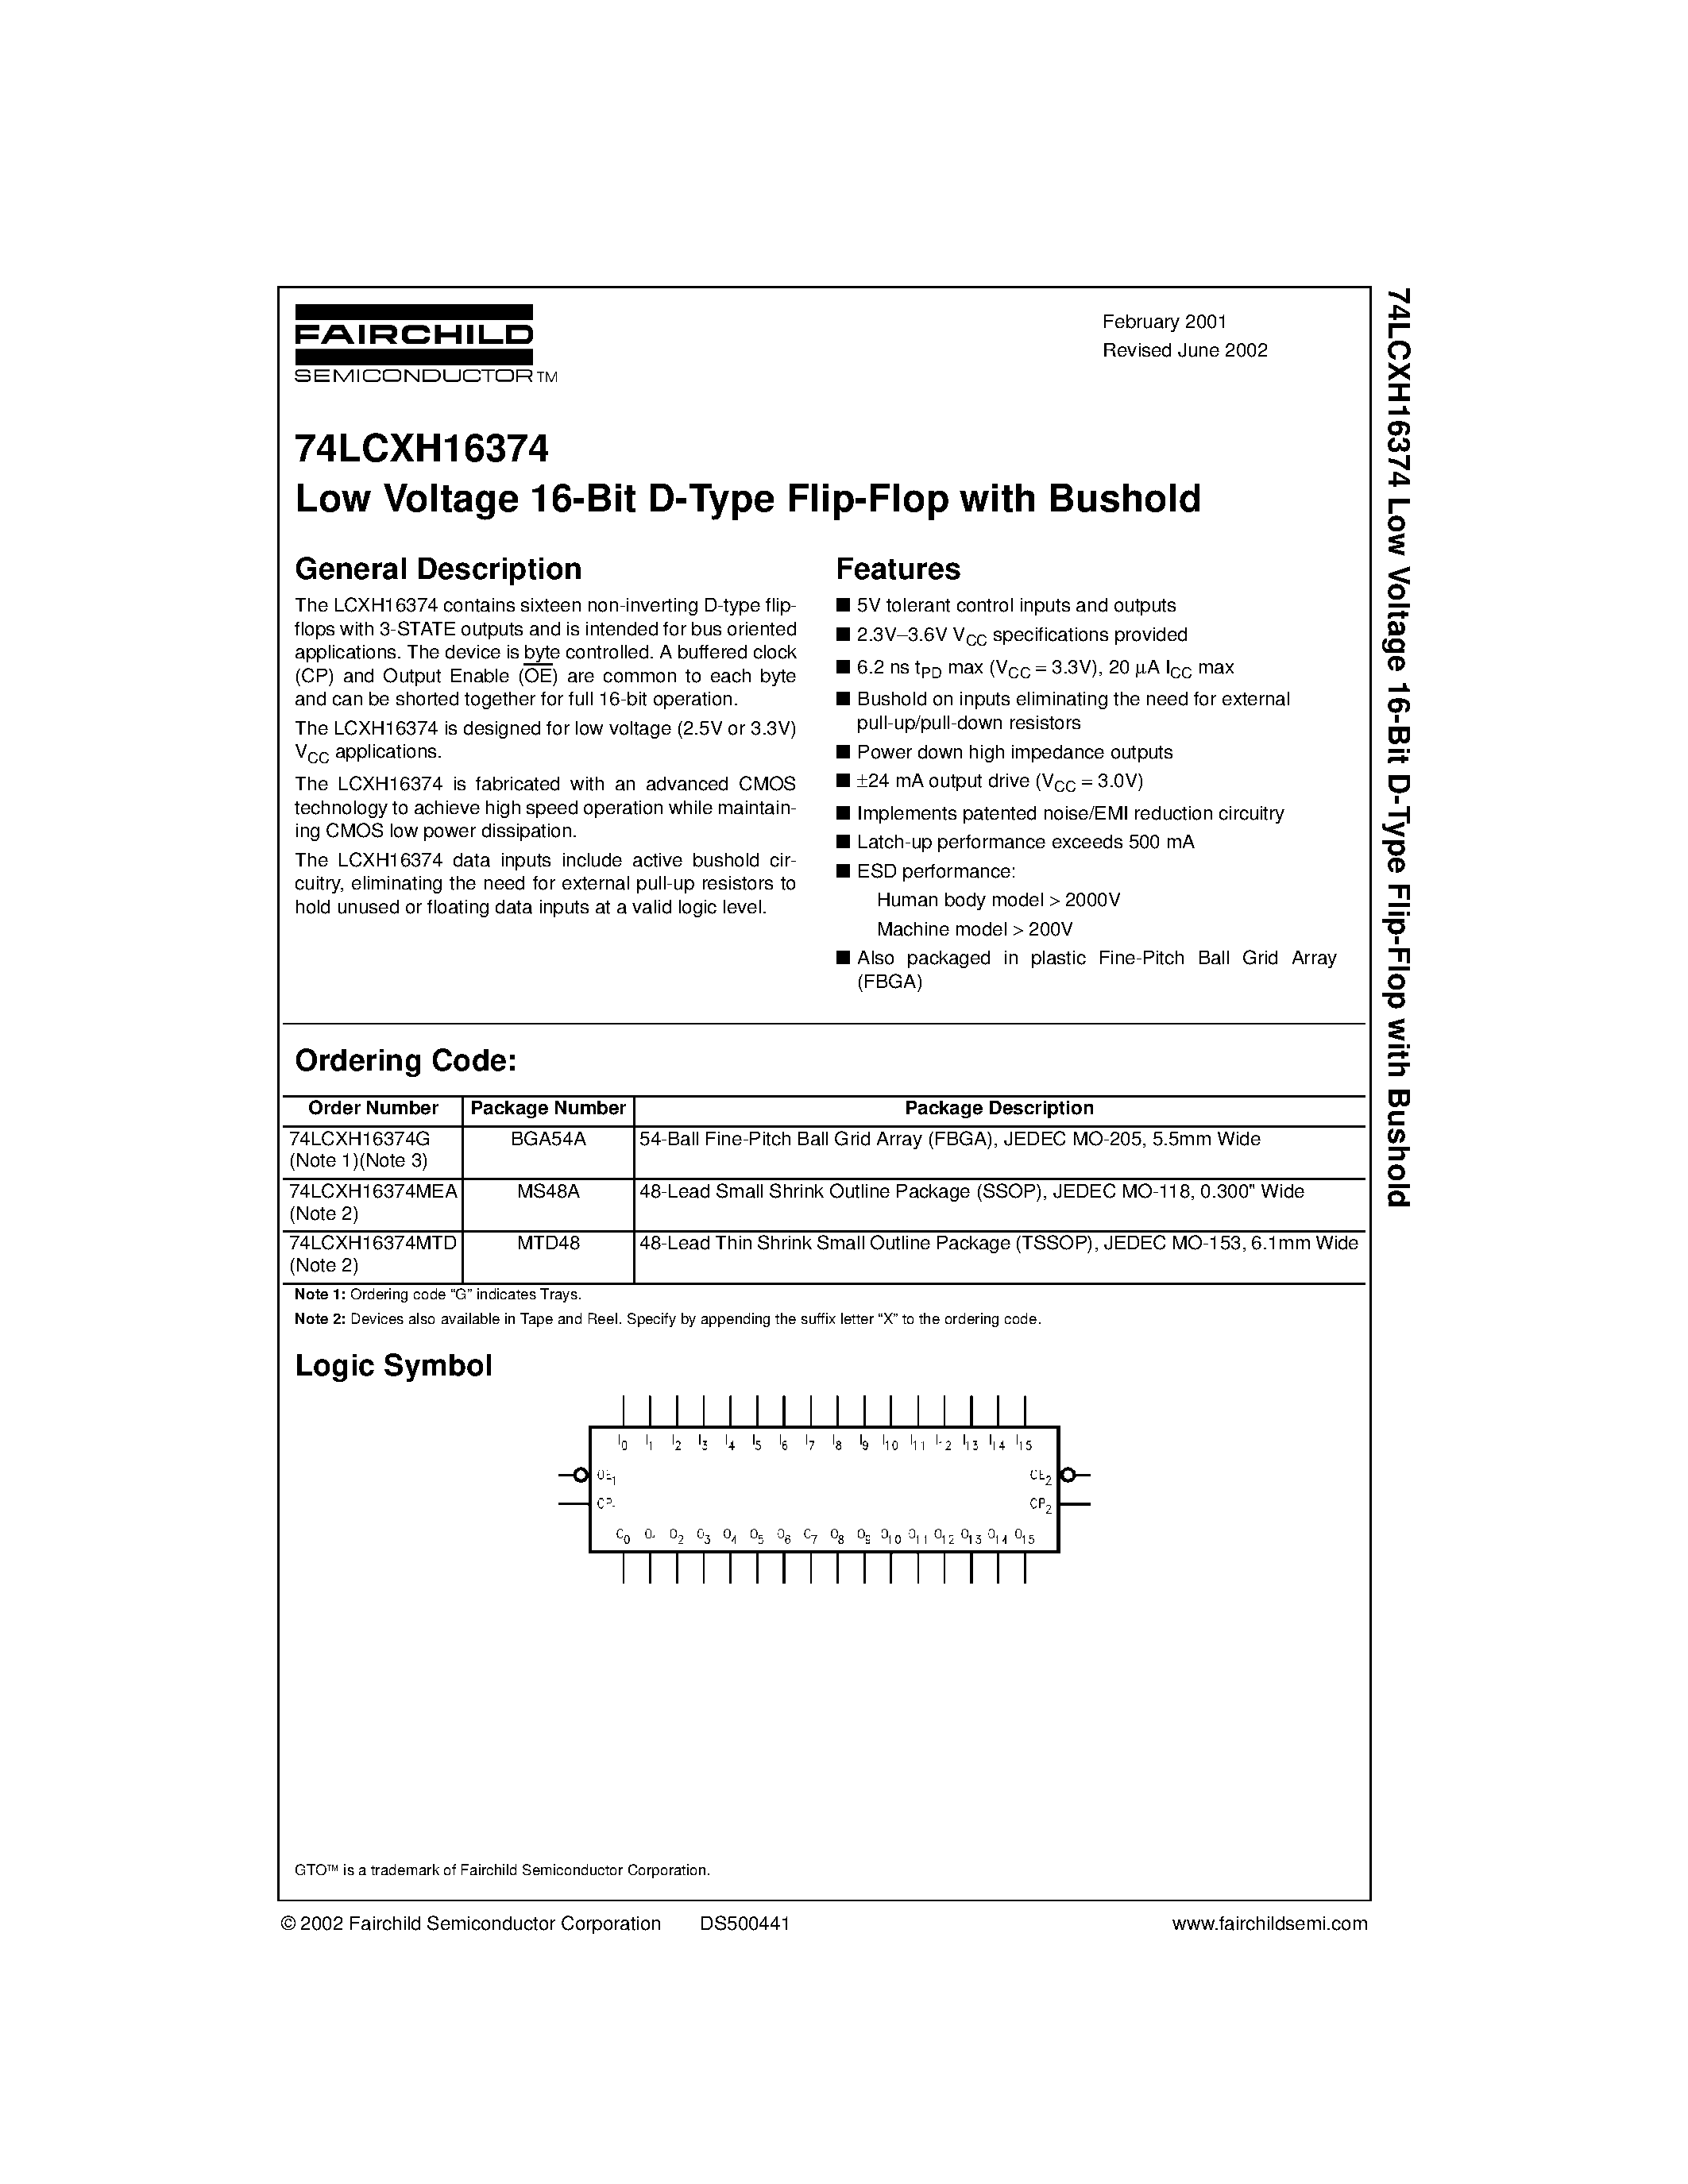 Datasheet 74LCXH16374MTD - Low Voltage 16-Bit D-Type Flip-Flop with Bushold page 1